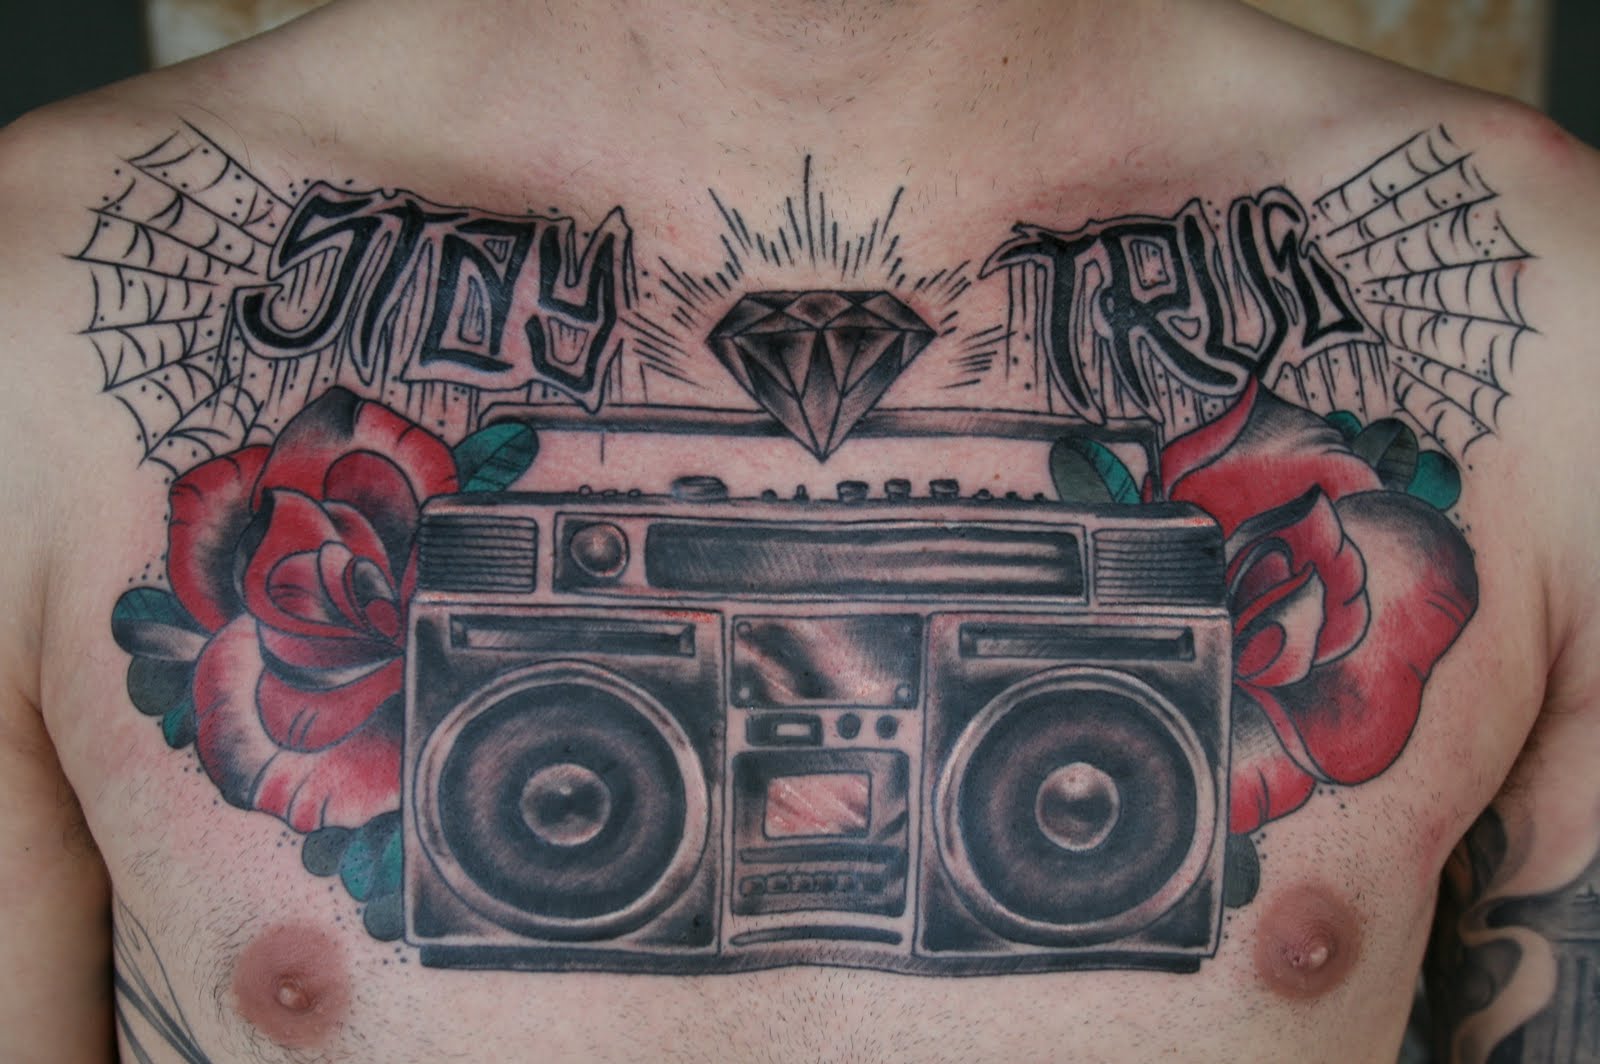 Boombox tattoos - TattooMagz Handpicked World's Greatest Tattoos